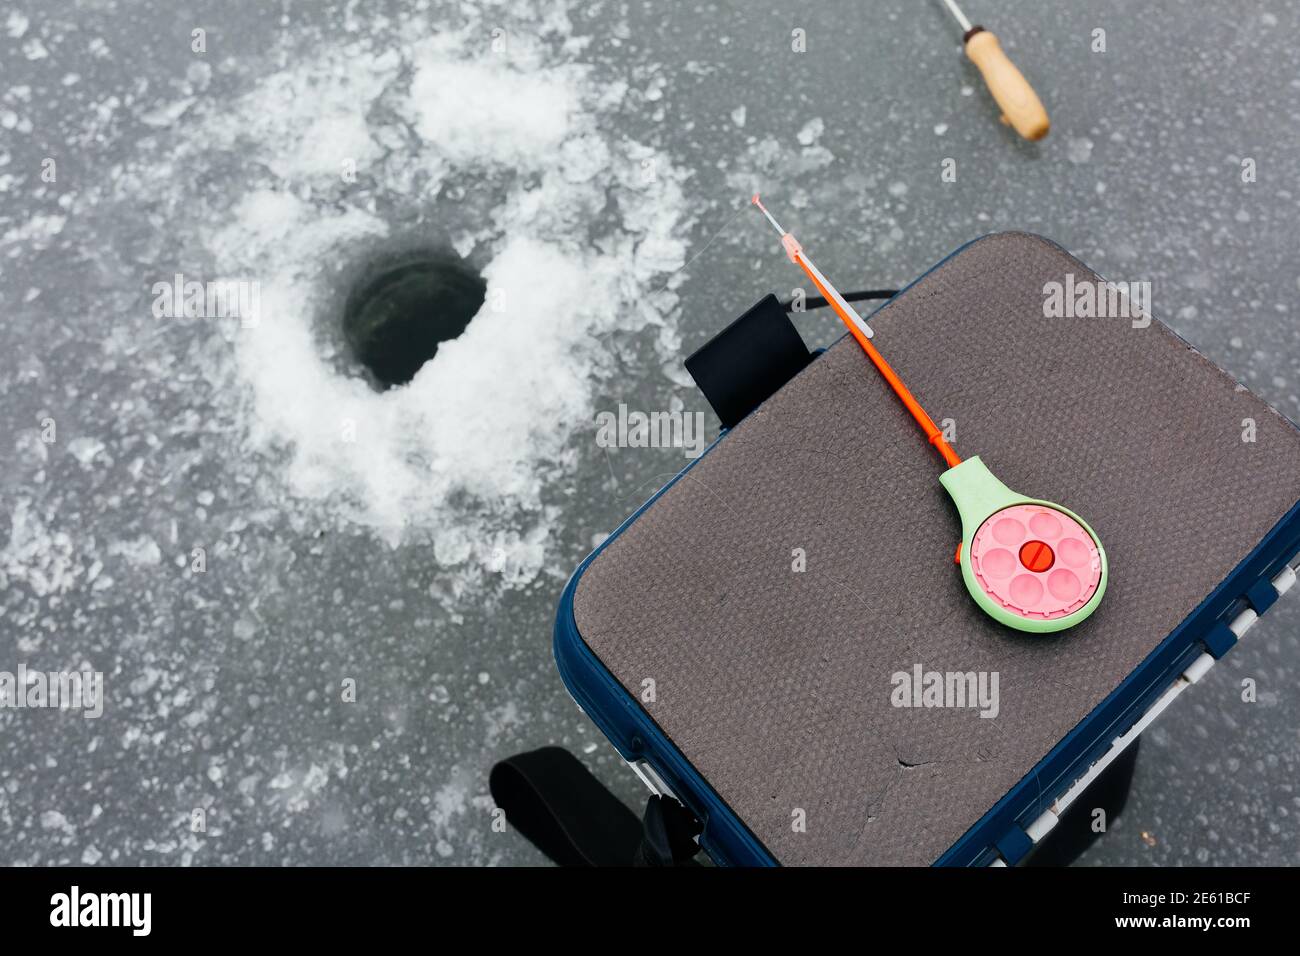 Primo piano attrezzatura per la pesca sul ghiaccio e attrezzature vicino al buco del ghiaccio. Concetto di pesca invernale. Pesca sul ghiaccio Foto Stock